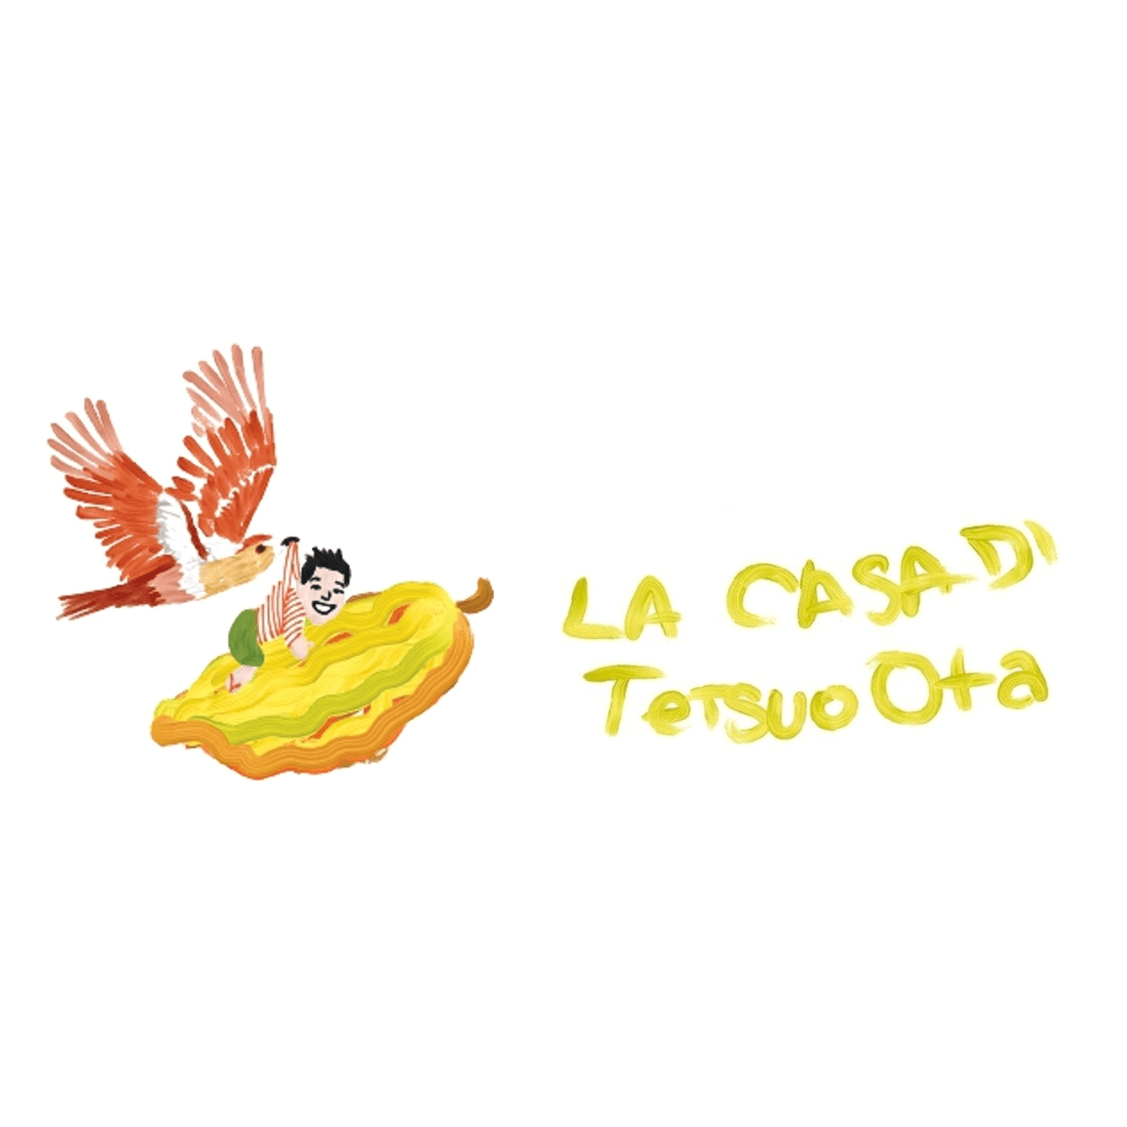 LA CASA DI Tetsuo Ota　※スイーツミュージアム出店